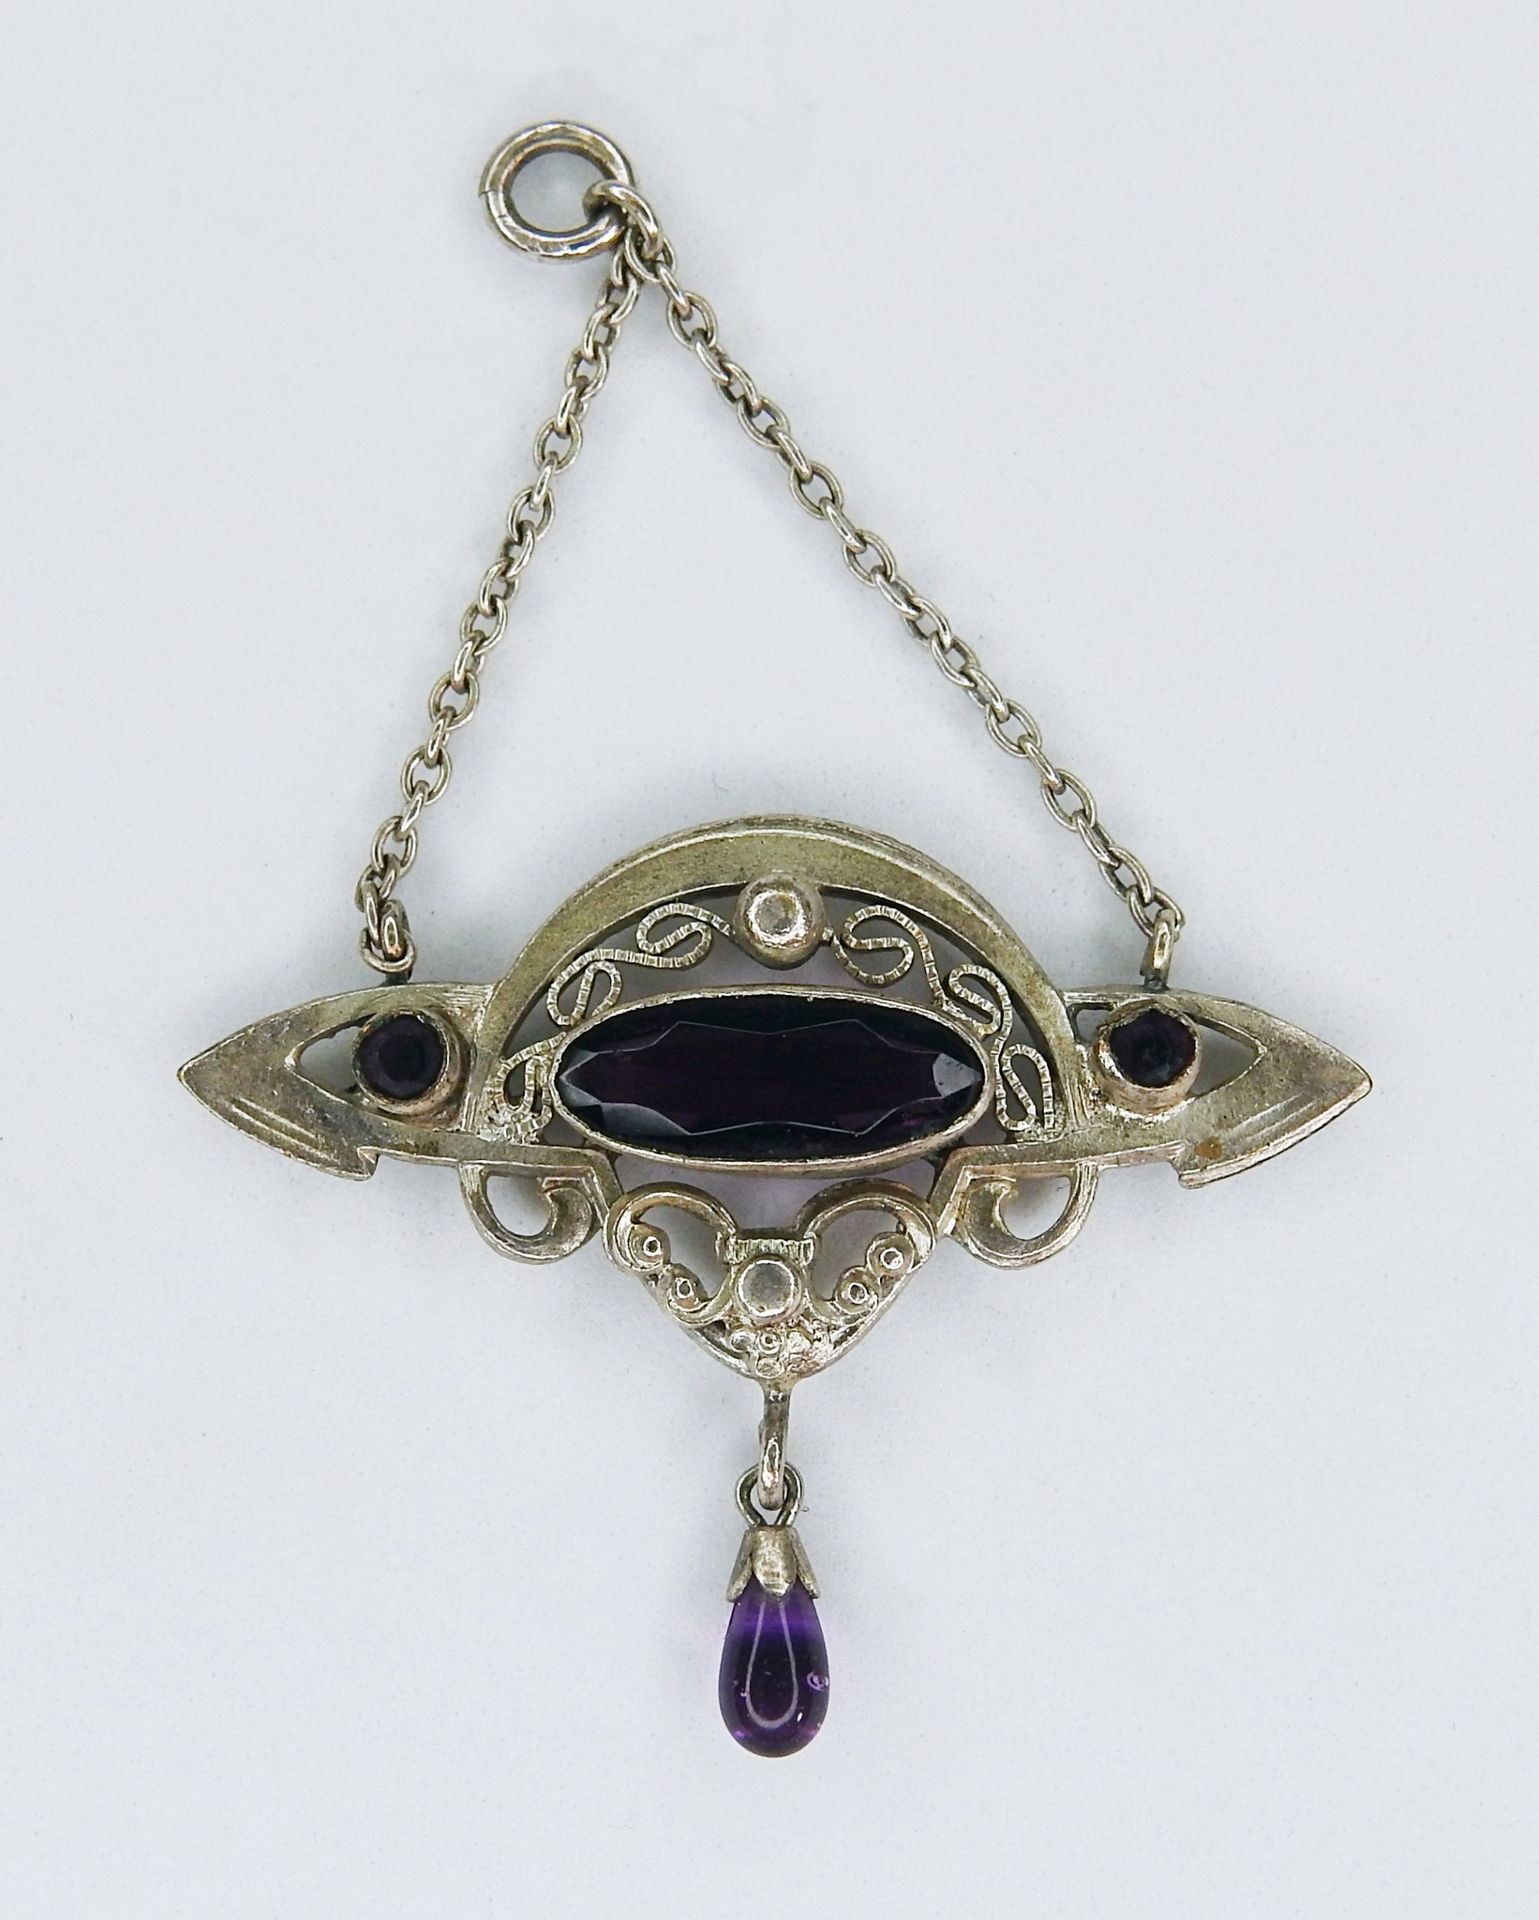 Feiner Jugendstil Anhänger 银色。美丽的吊坠，有紫水晶装饰，紫水晶吊坠为水滴形。高×宽约5×3.5厘米，重量约3克